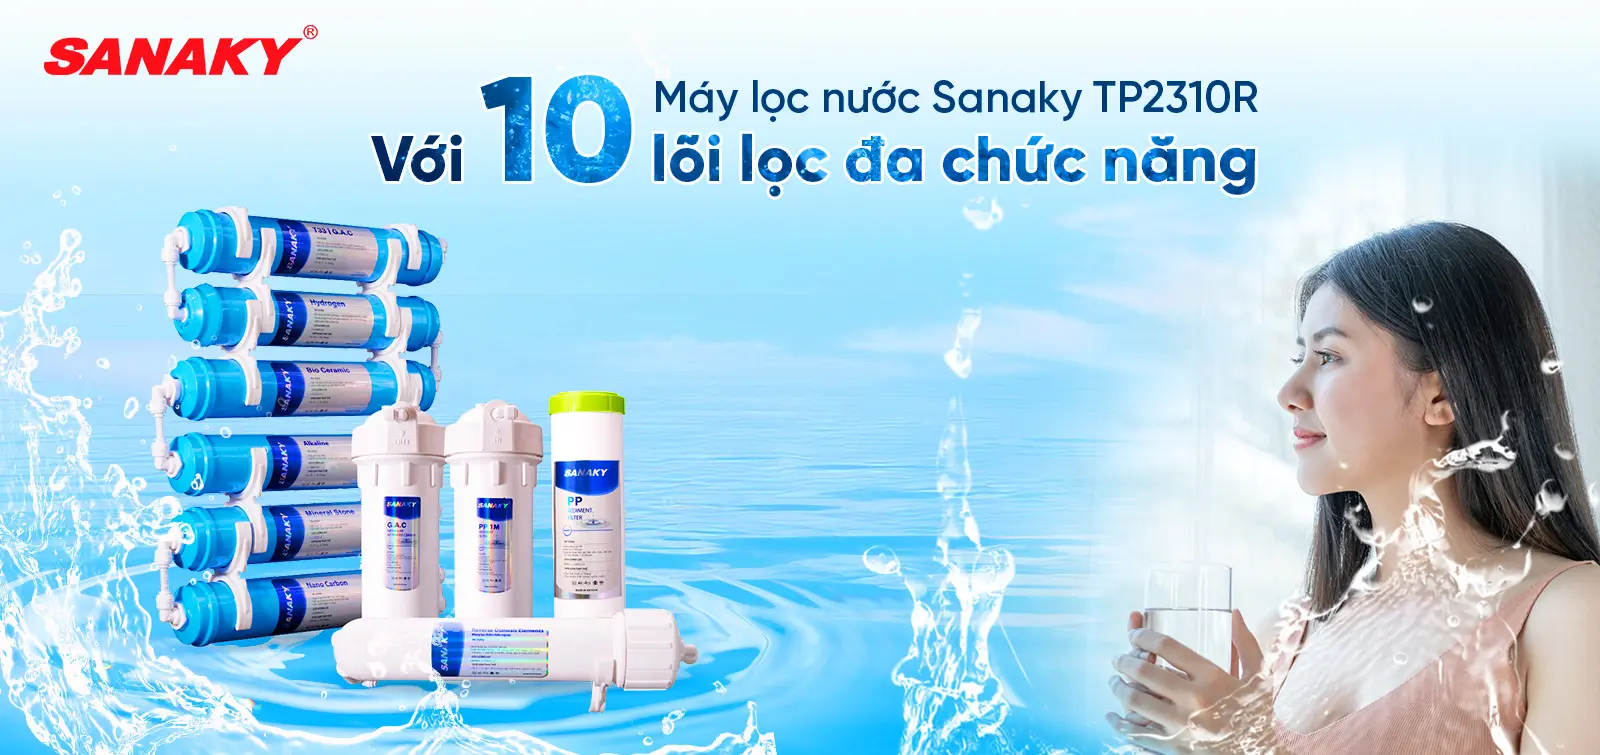 Máy lọc nước Sanaky TP2310R với 10 lõi lọc đa chức năng